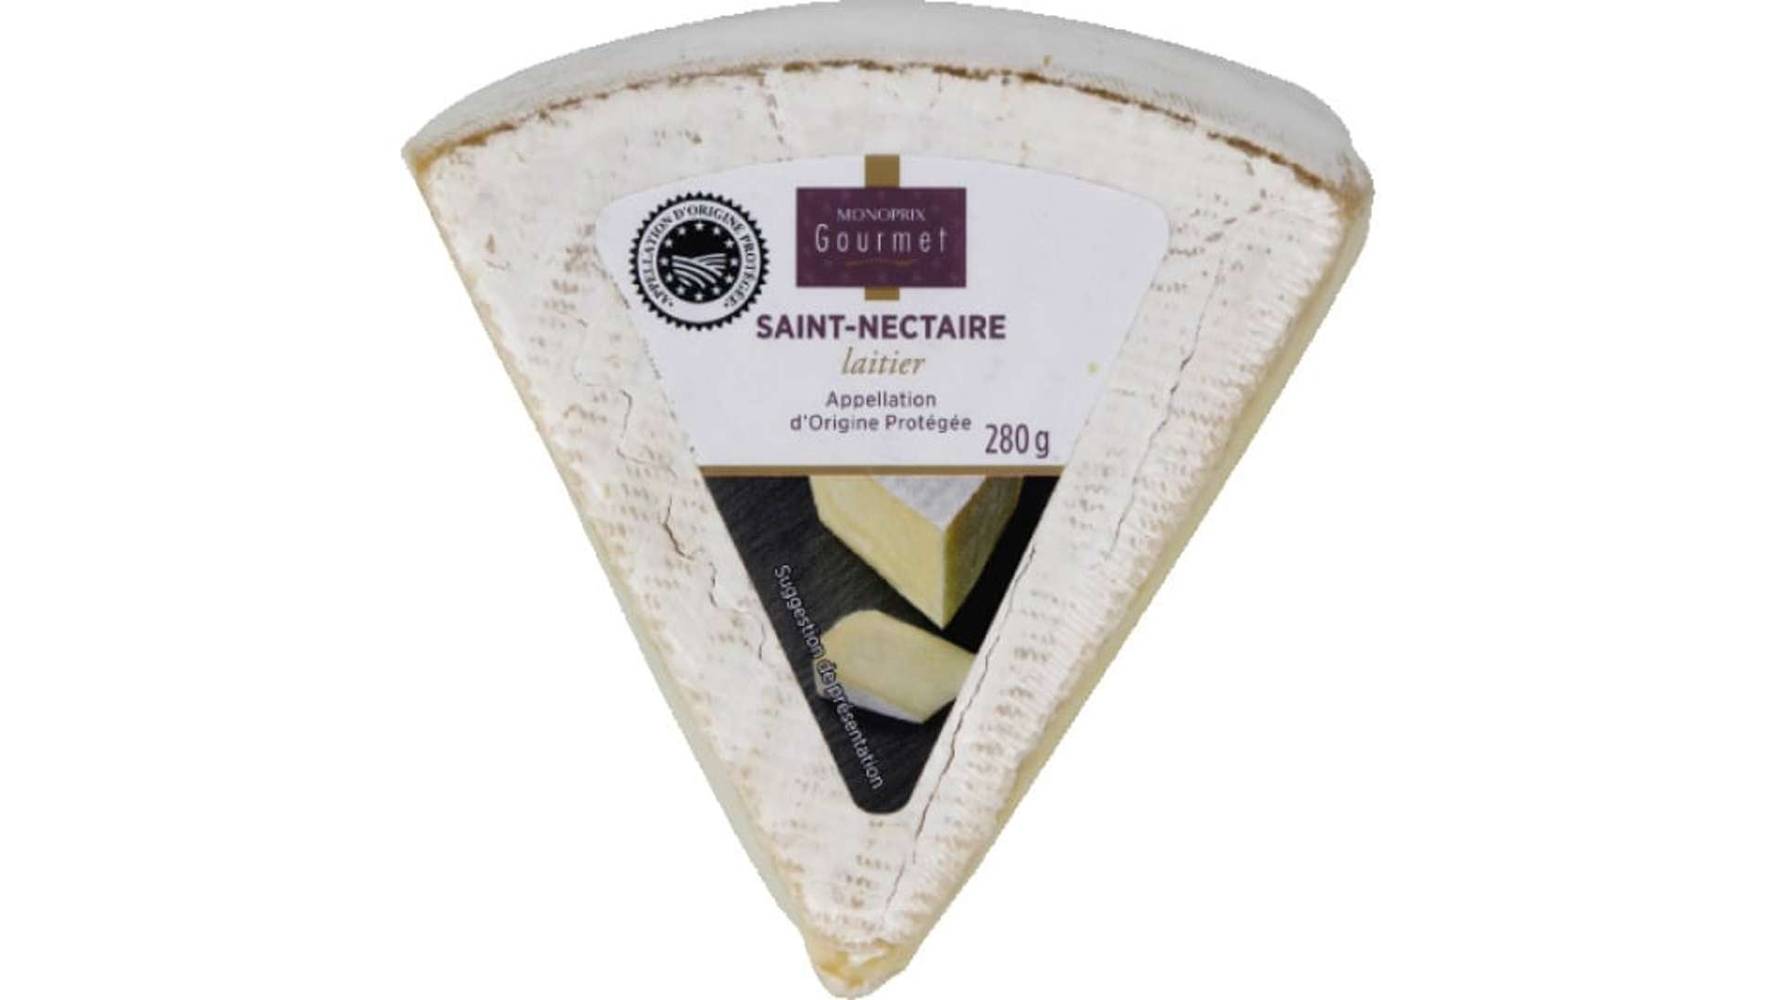 Monoprix Gourmet - Saint nectaire laitier